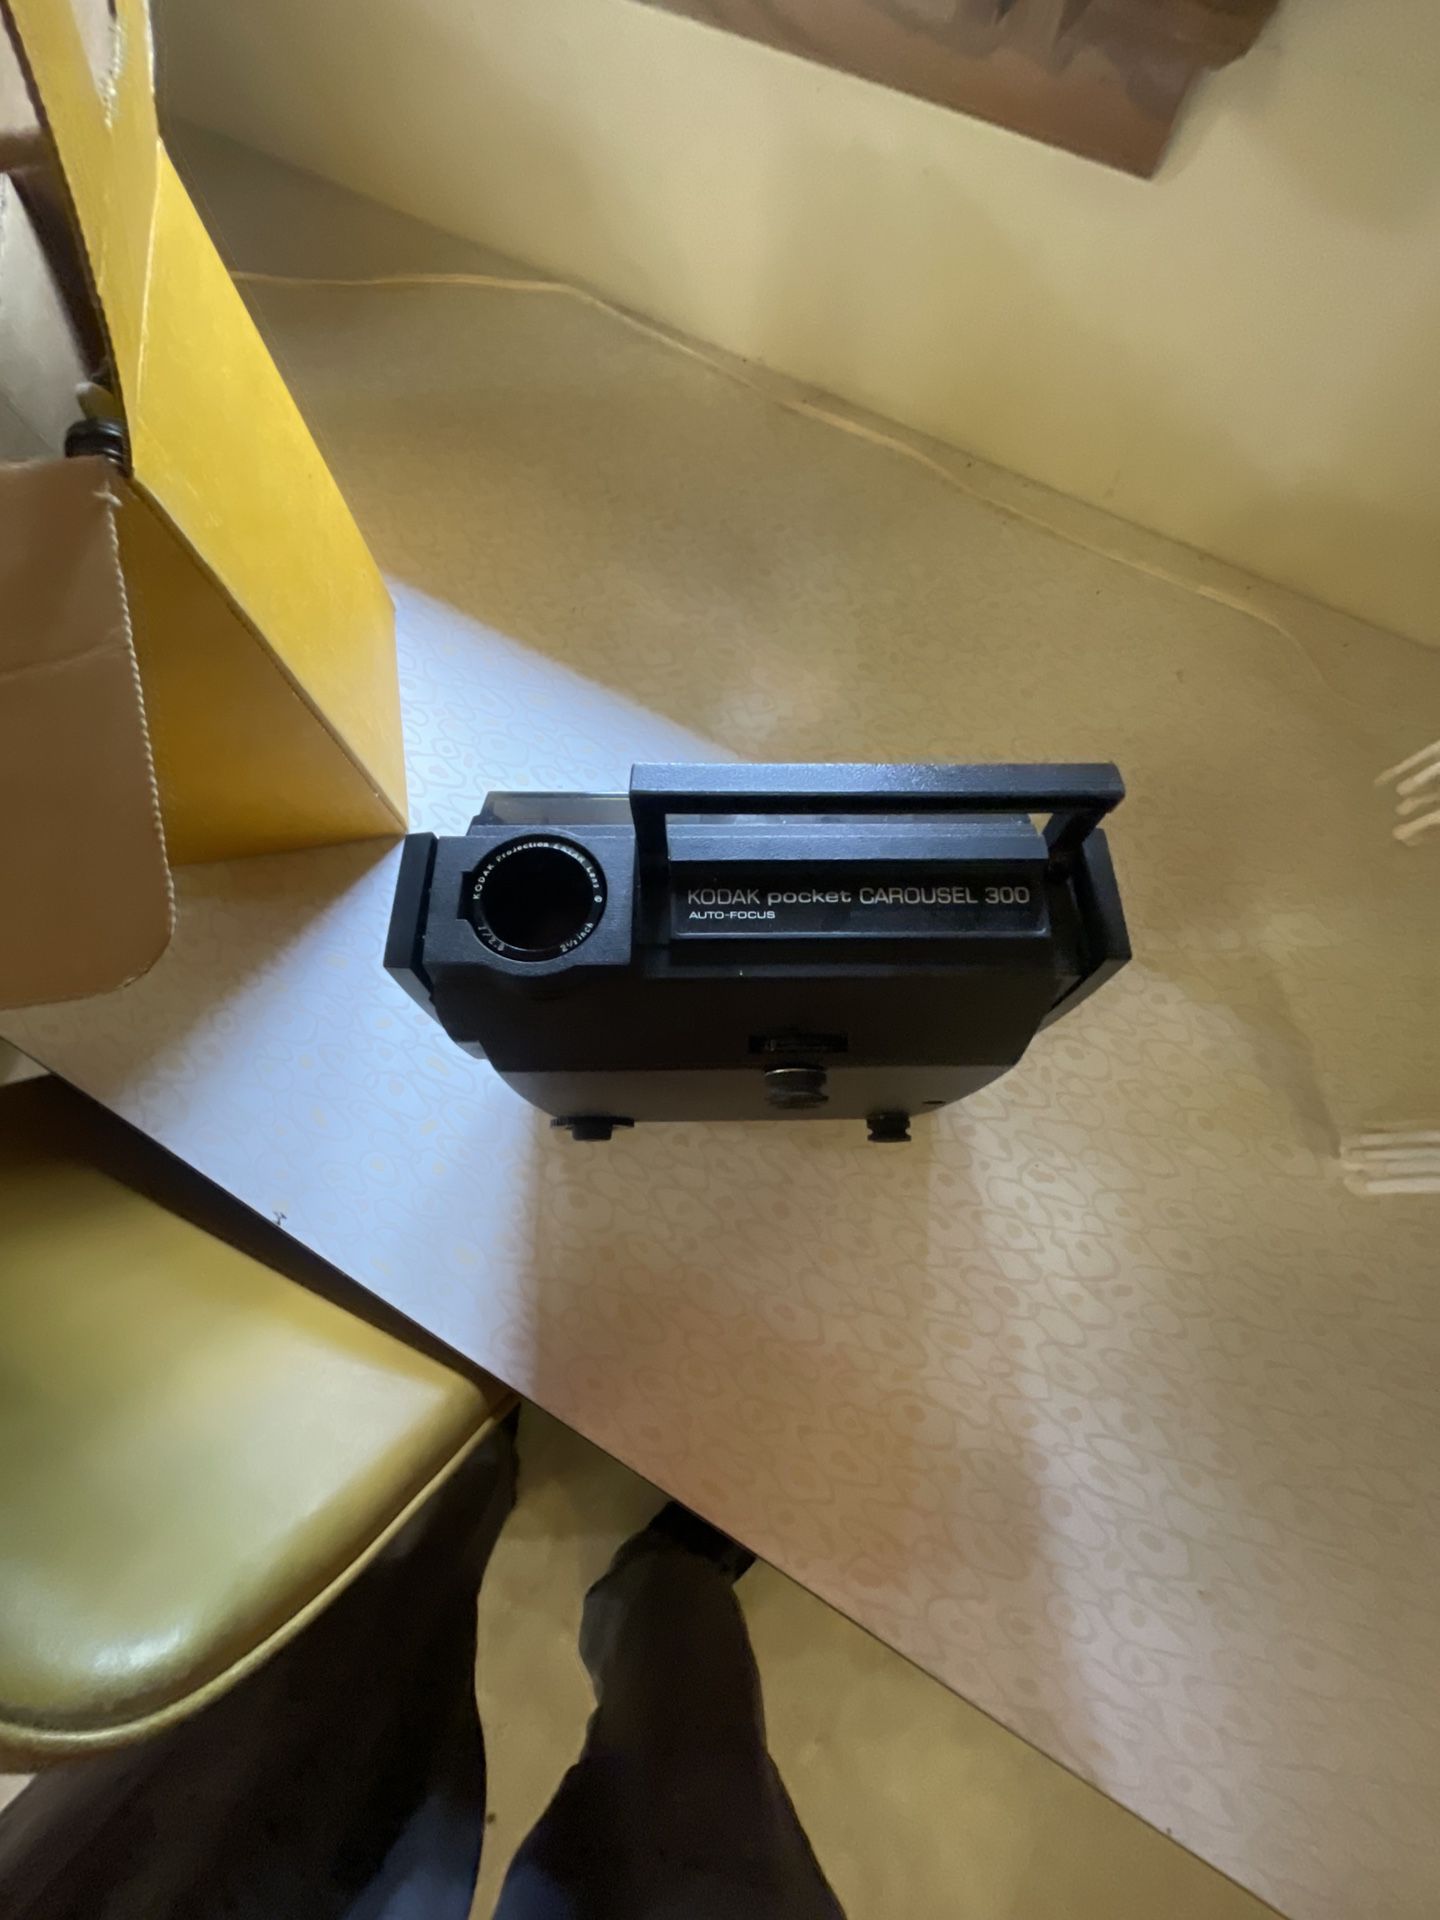 Kodak AUTO-FOCUS PROJECTOR MADE IN U,S.A.